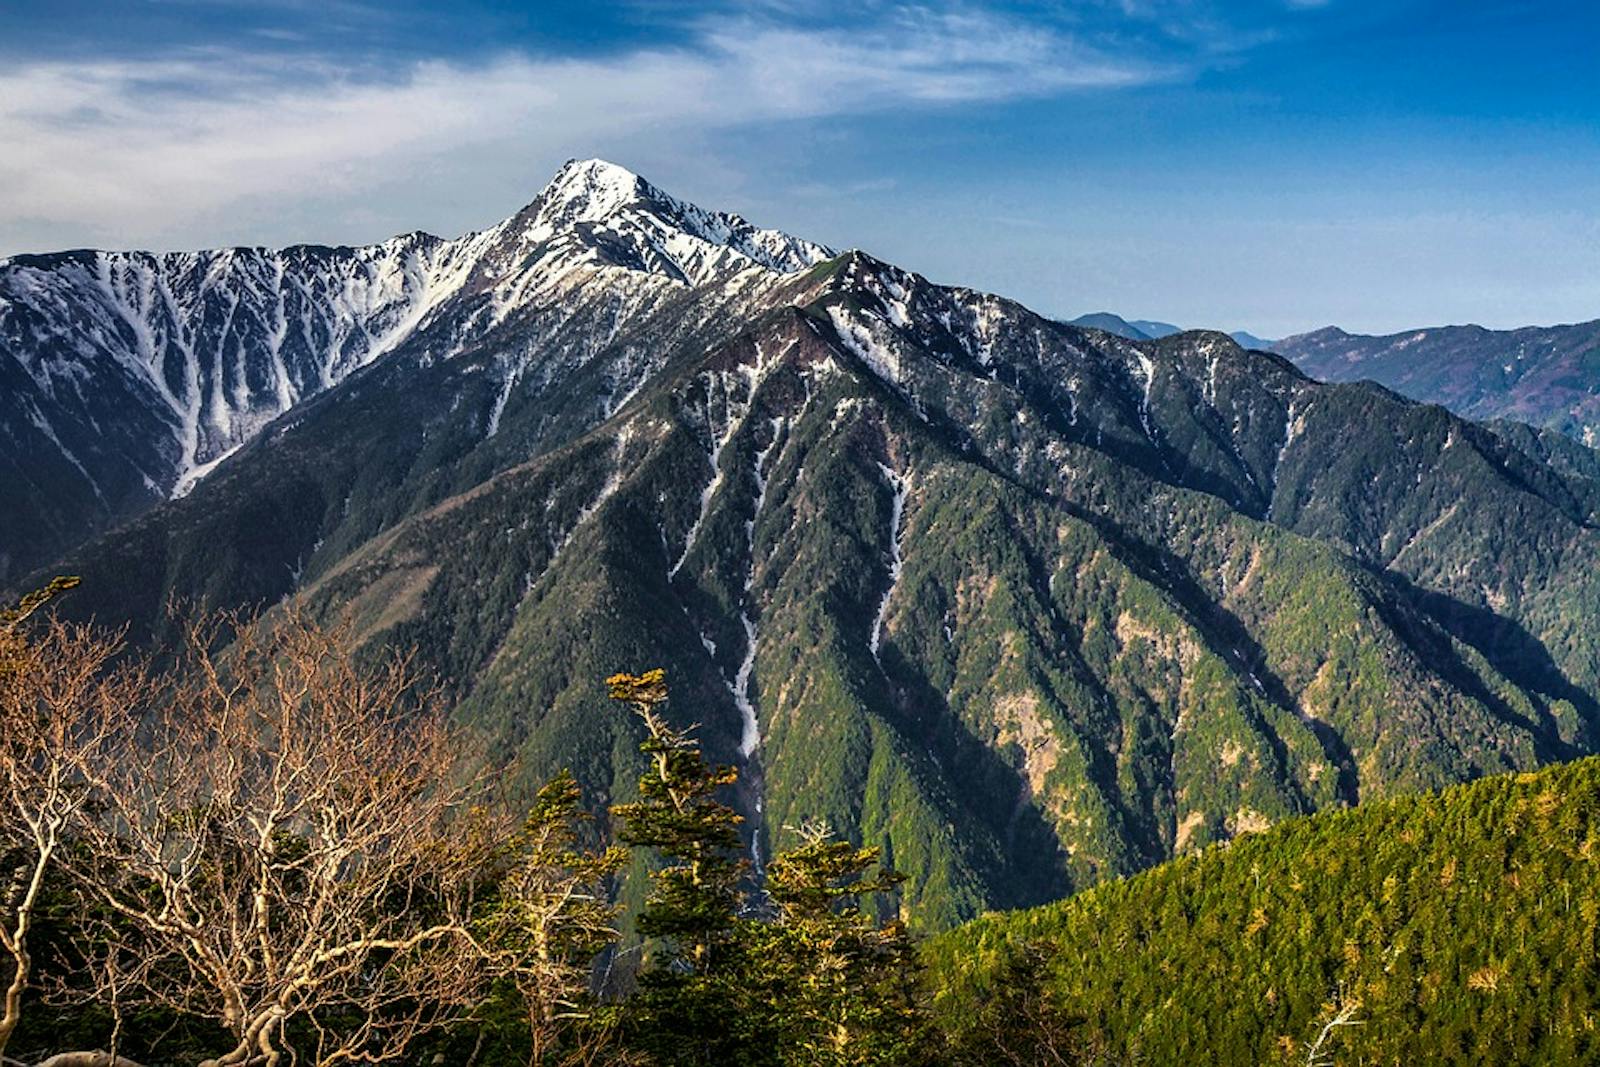 Honshu Alpine Conifer Forests